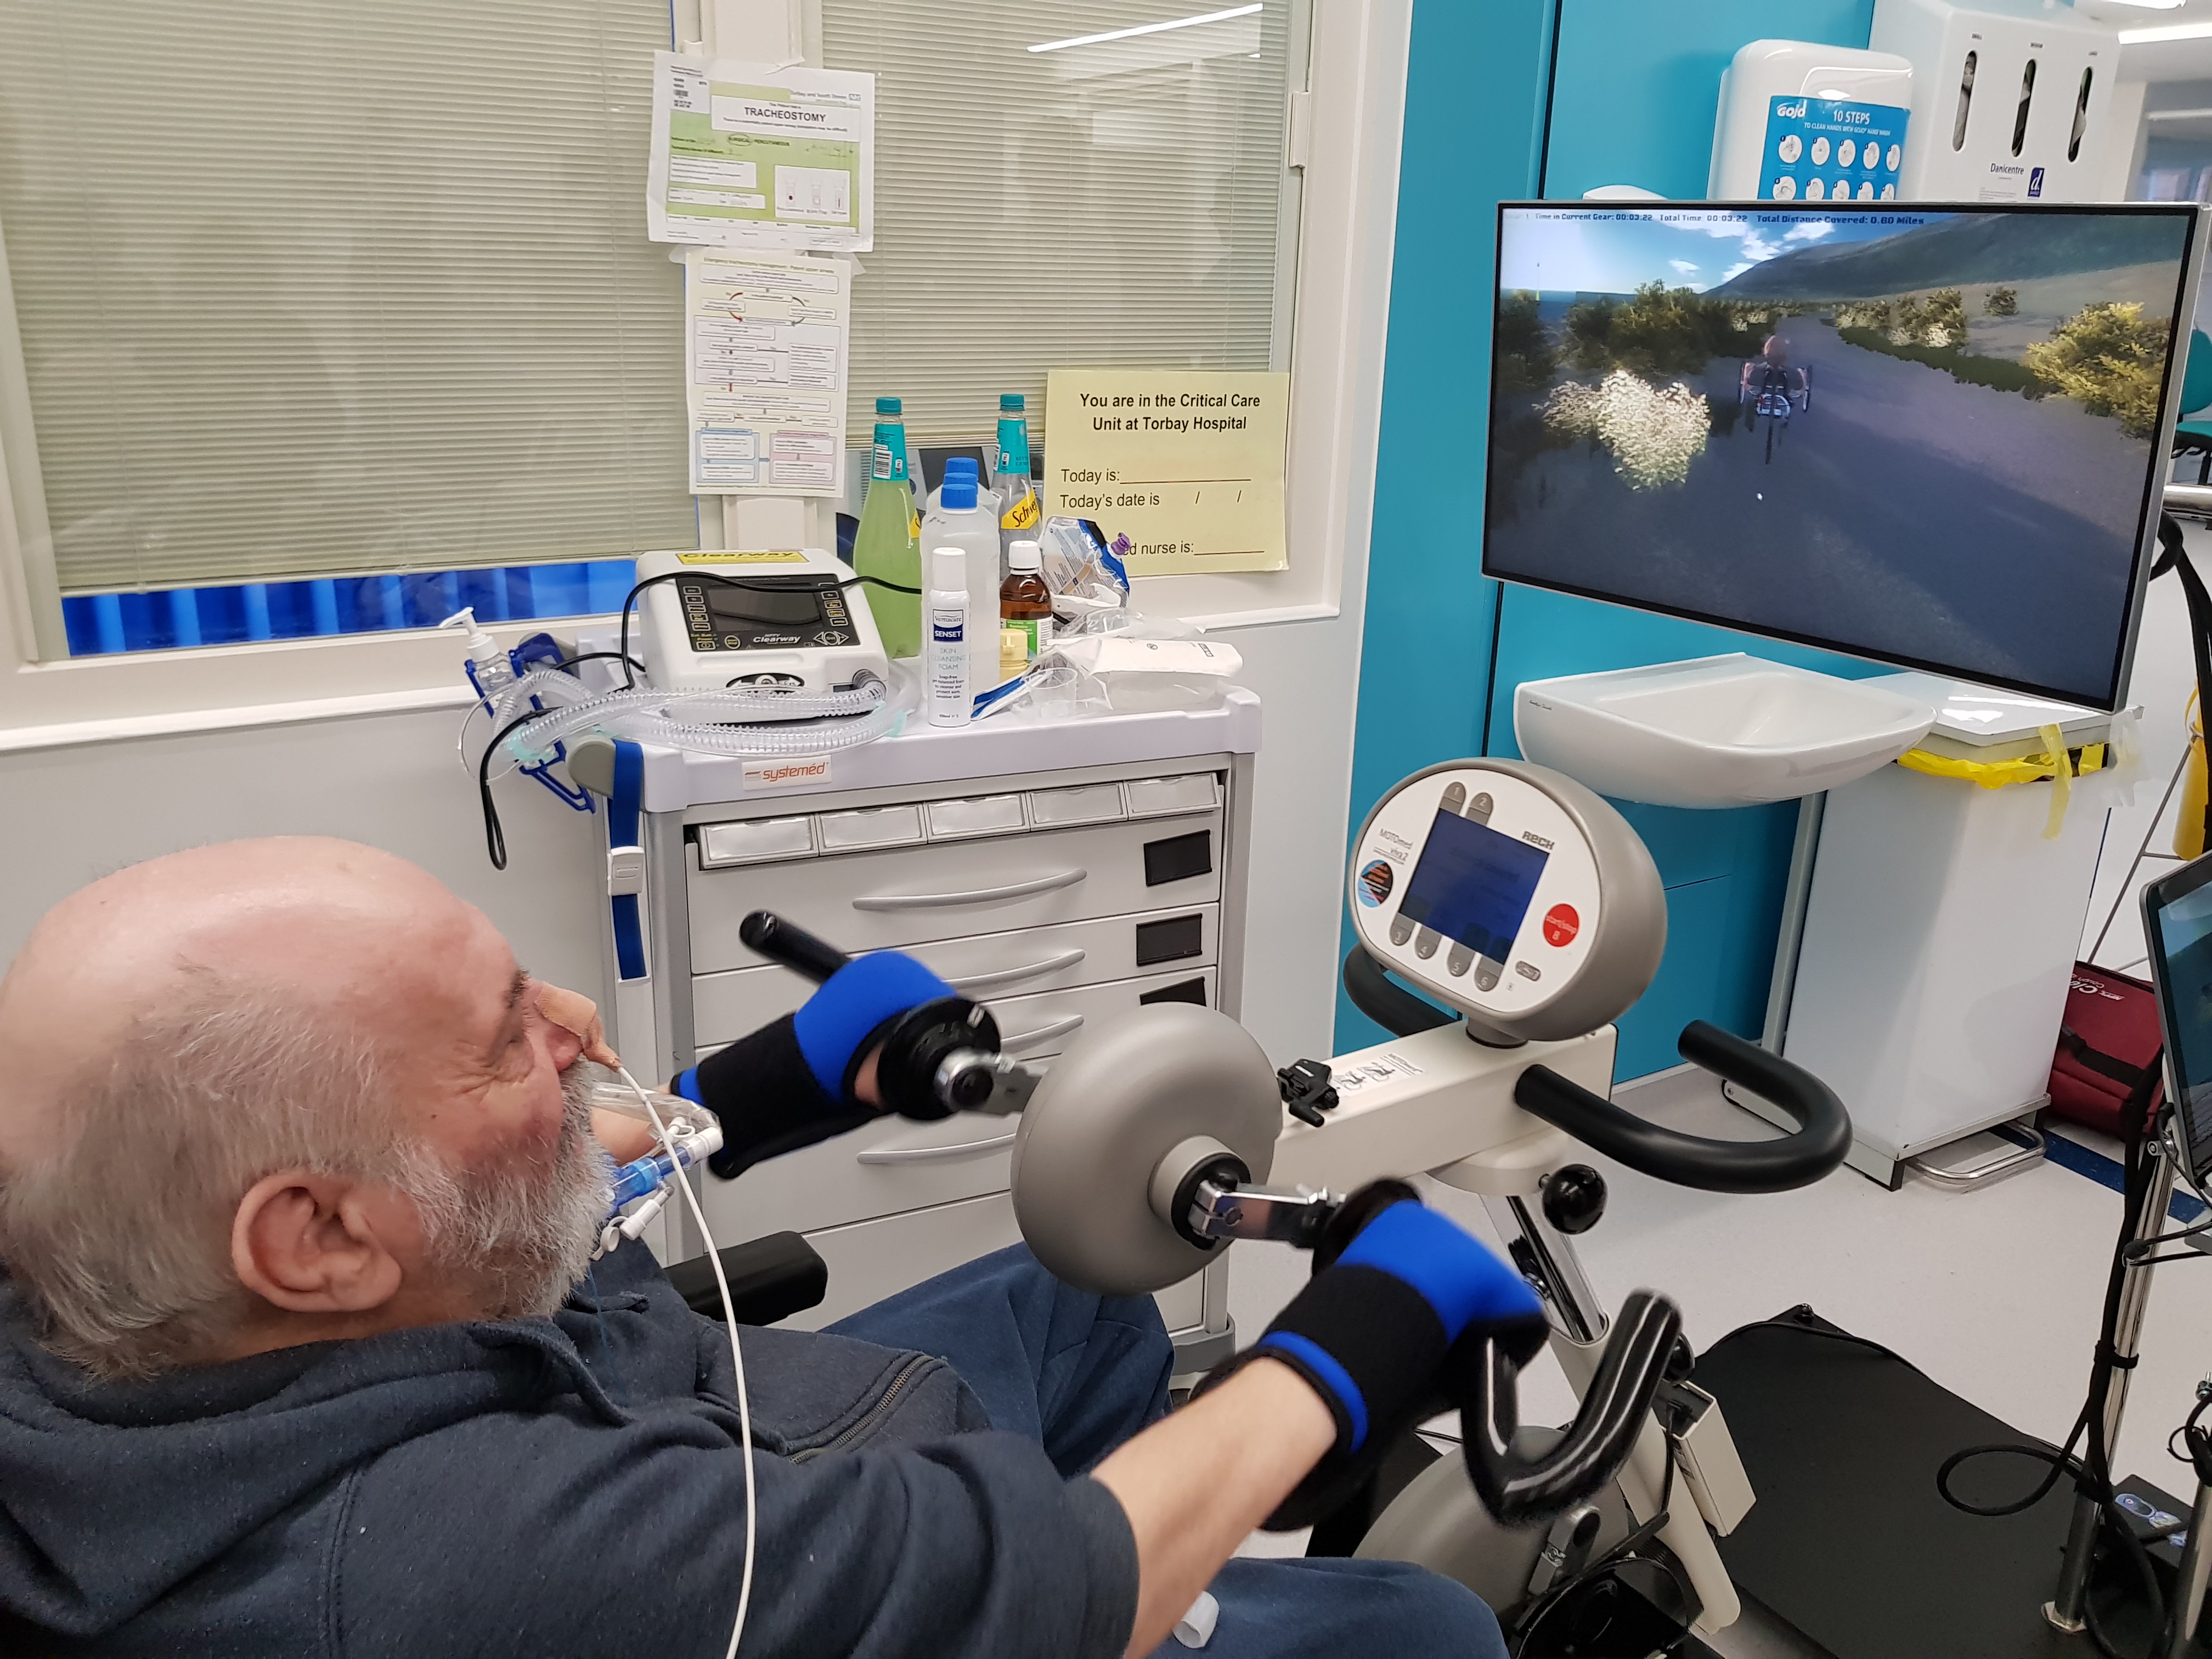 VR for rehabilitation